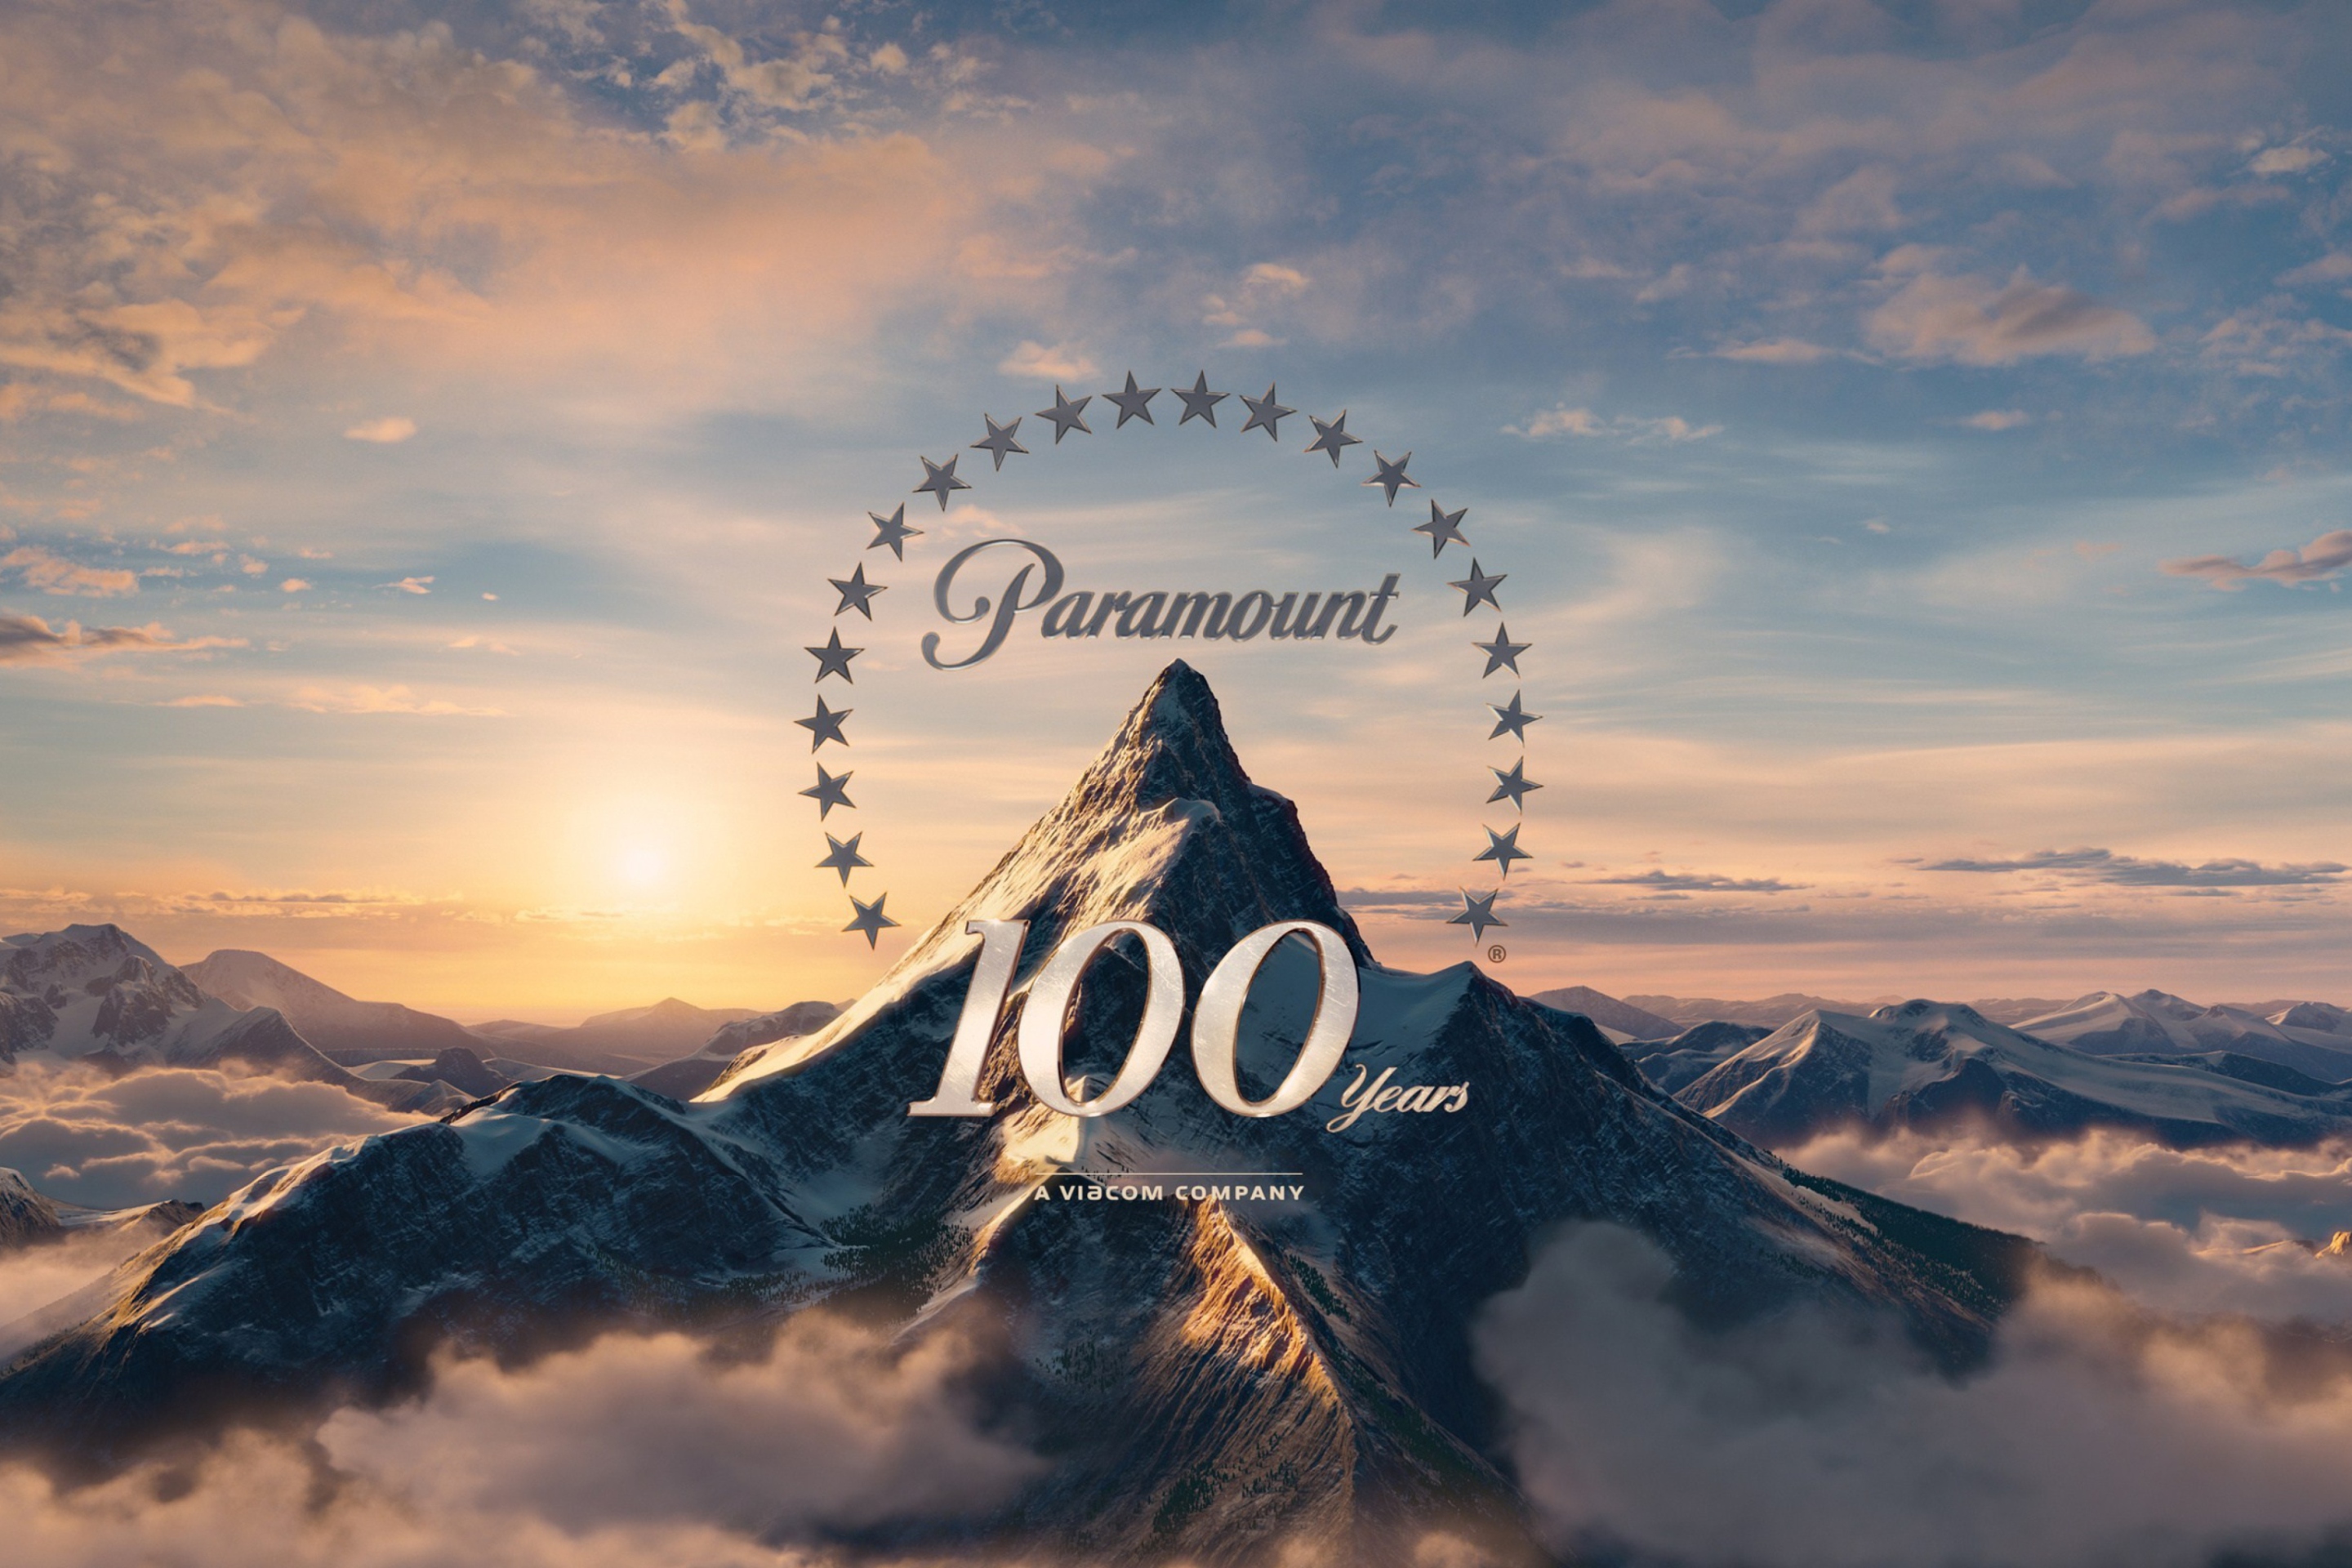 Обои Paramount Pictures 100 Years 2880x1920